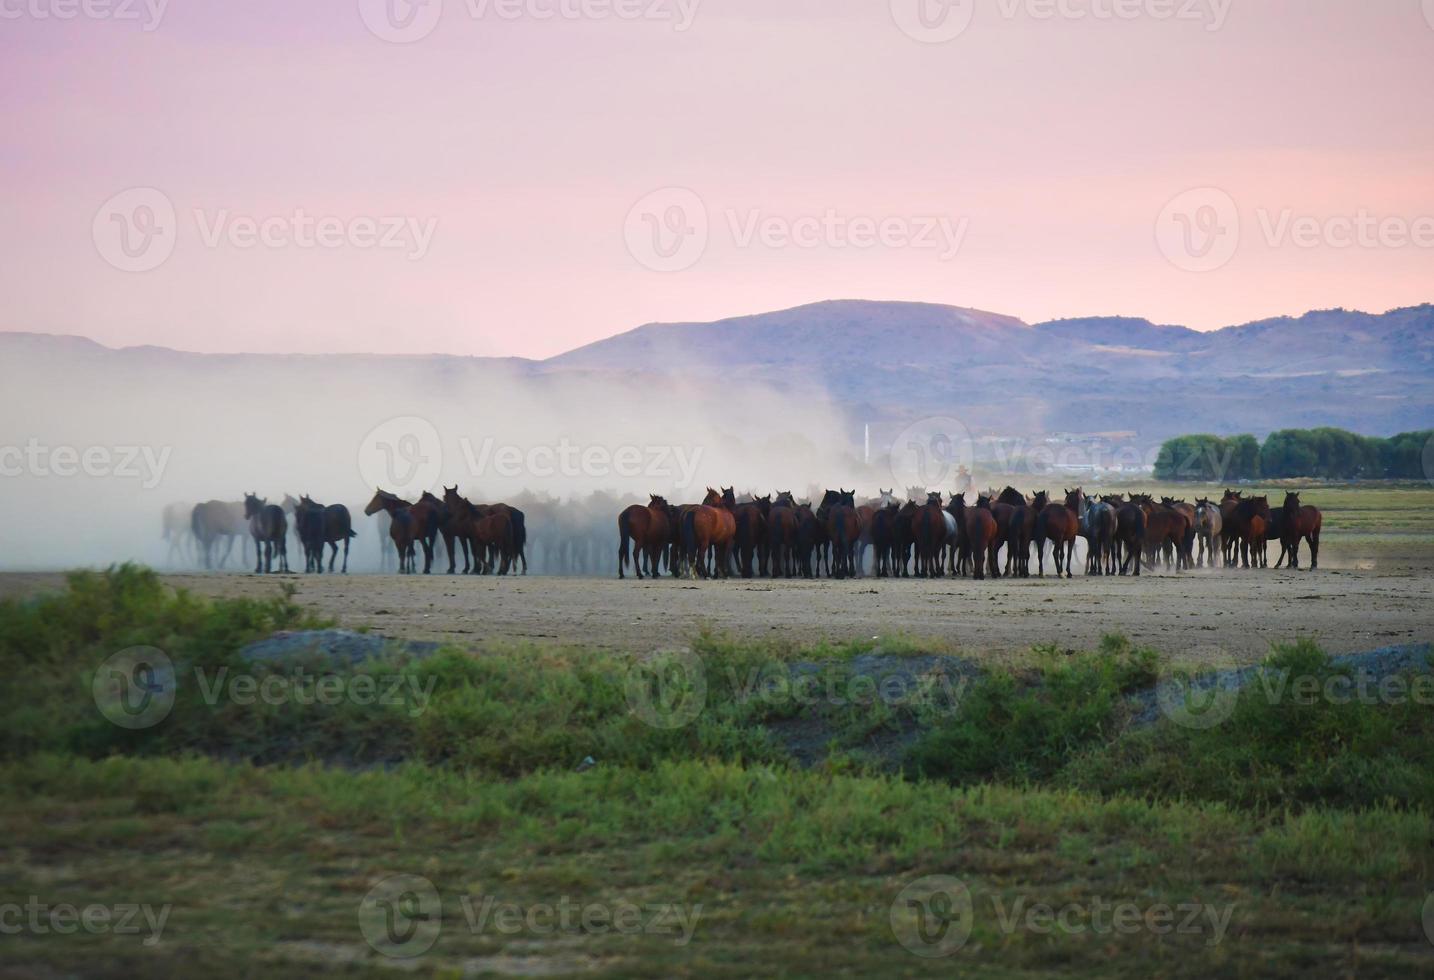 chevaux sauvages yilki se tiennent dans un champ de prairie poussiéreux libre à l'extérieur dans la nature, keyseri, turquie photo